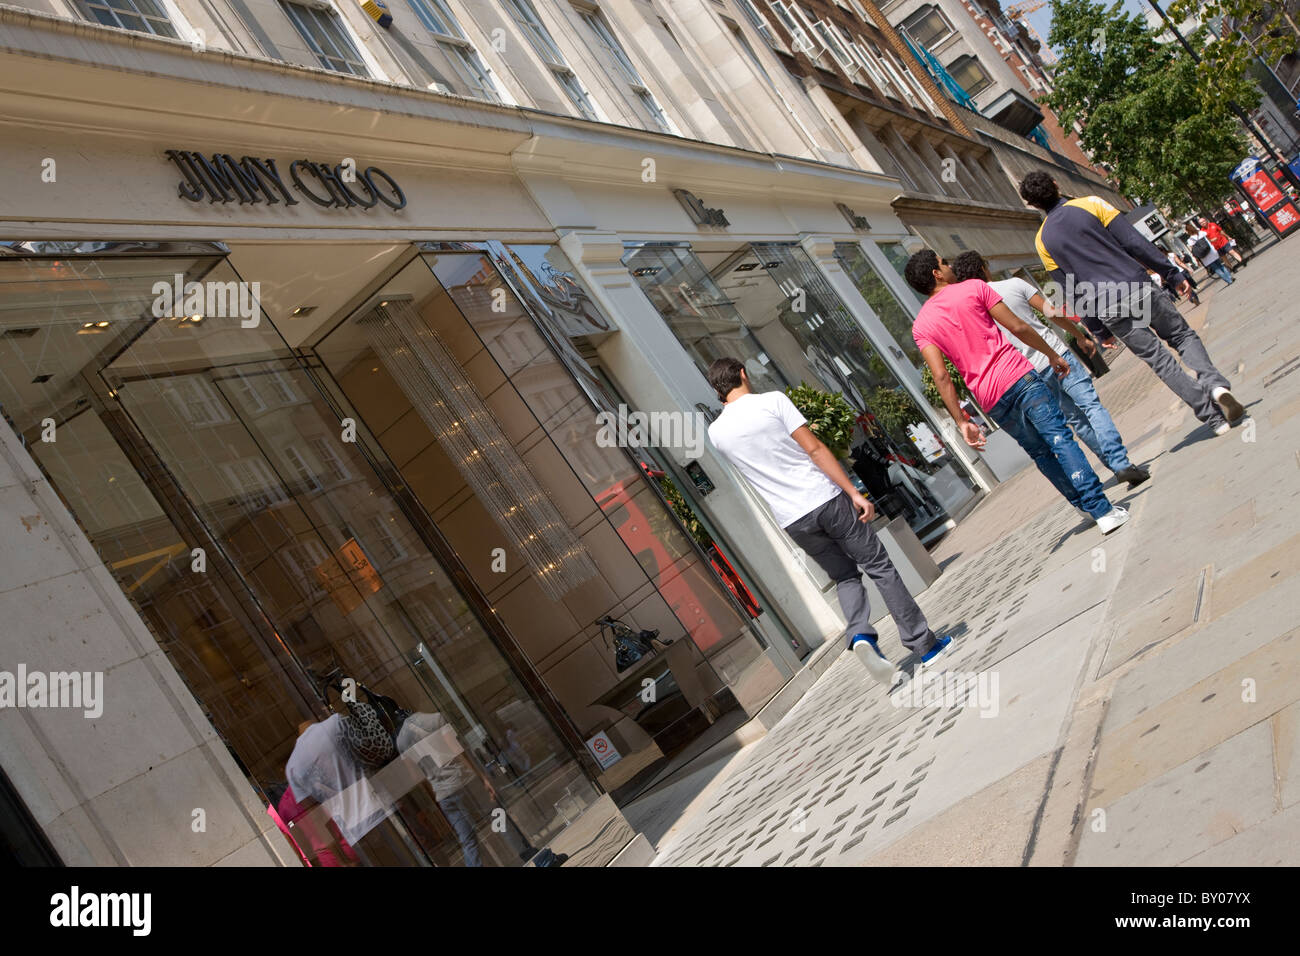 Jimmy Choo-Shop an der Sloane Street in Knightsbridge Stockfoto